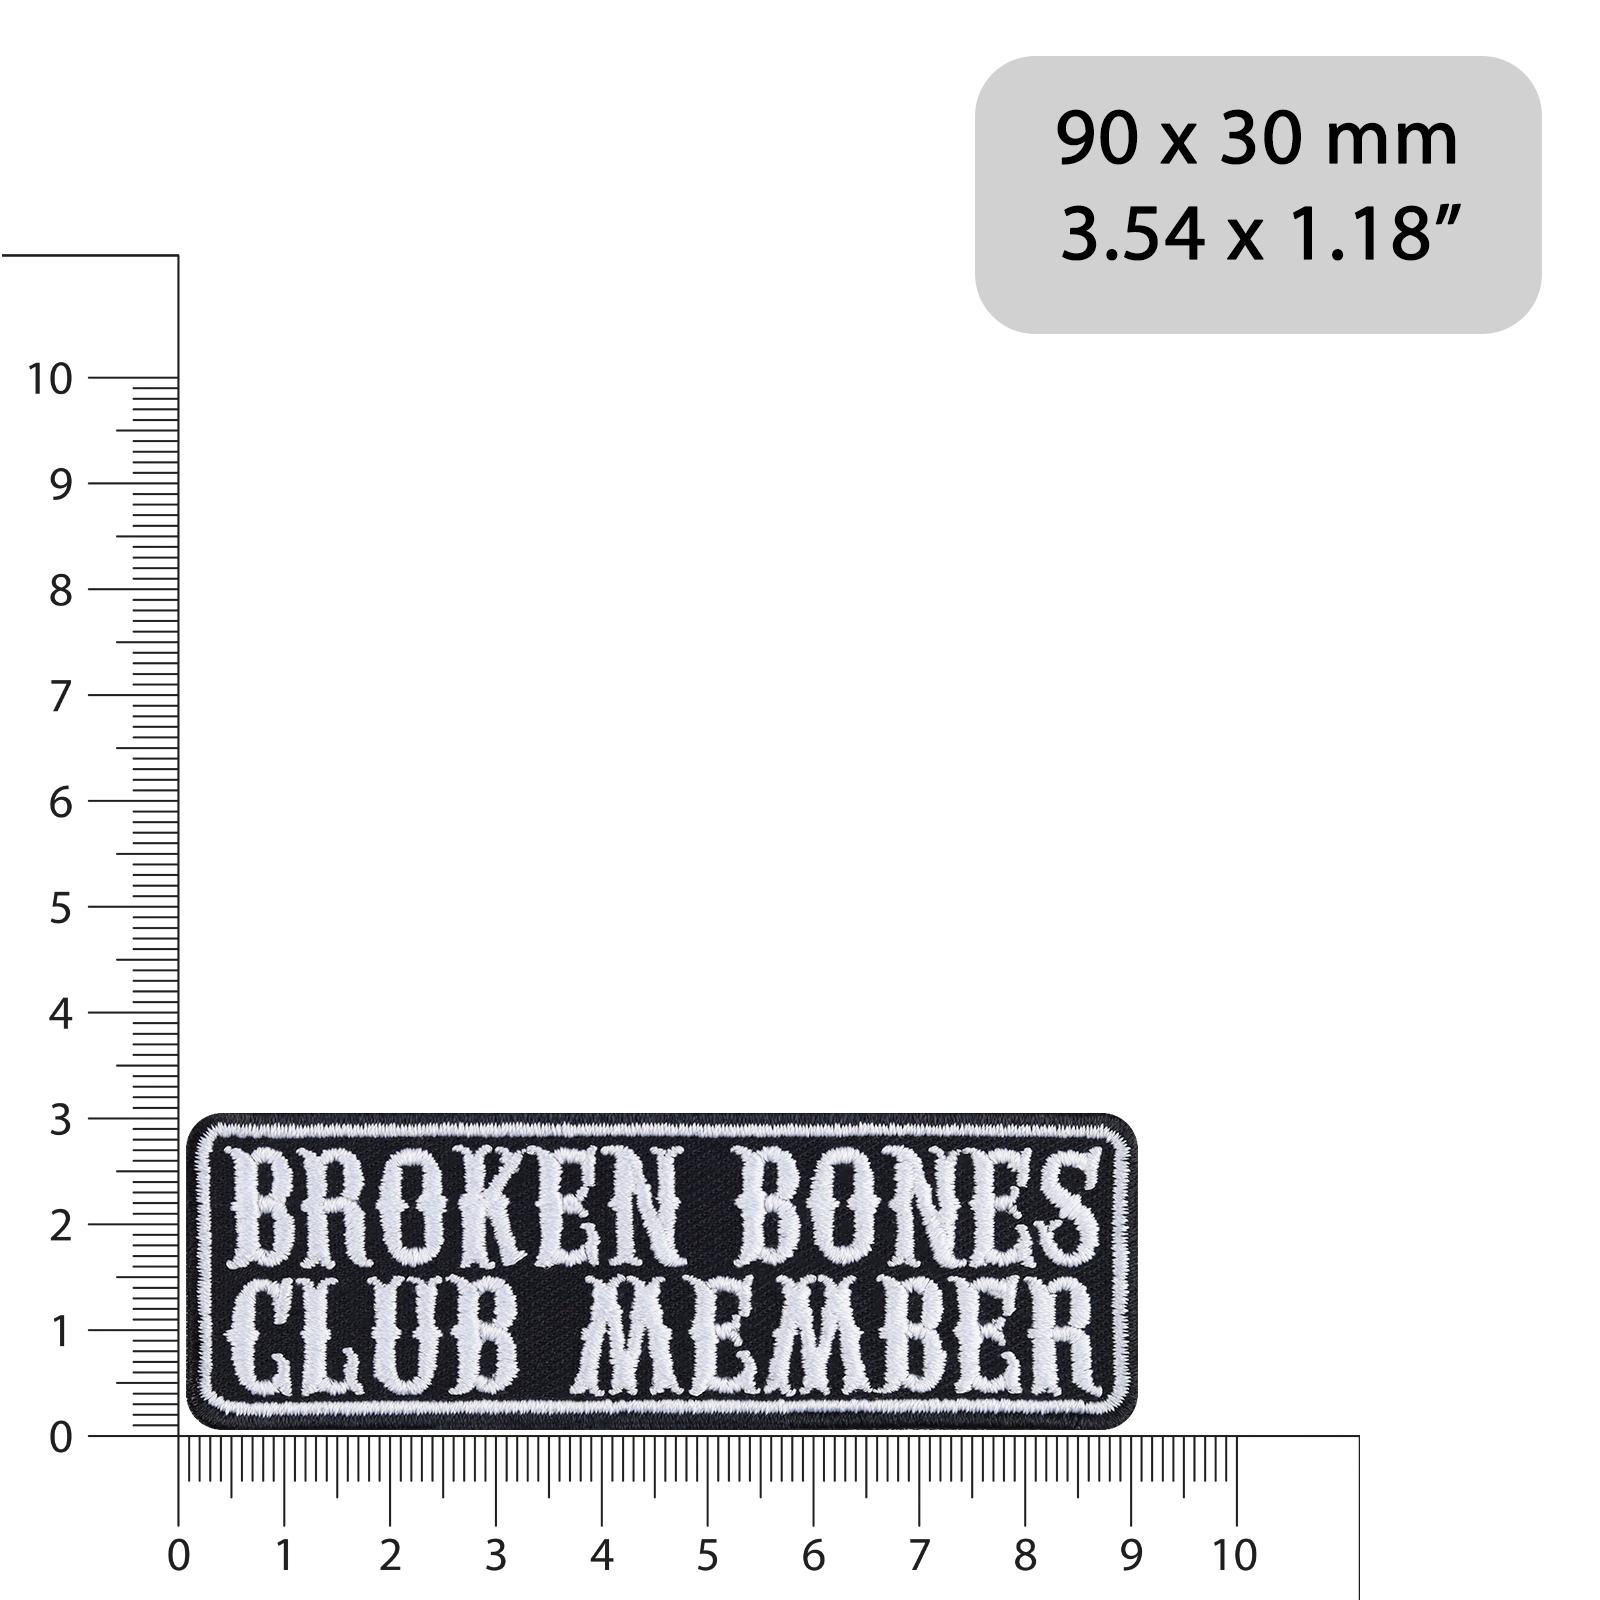 Broken bones club member - Patch